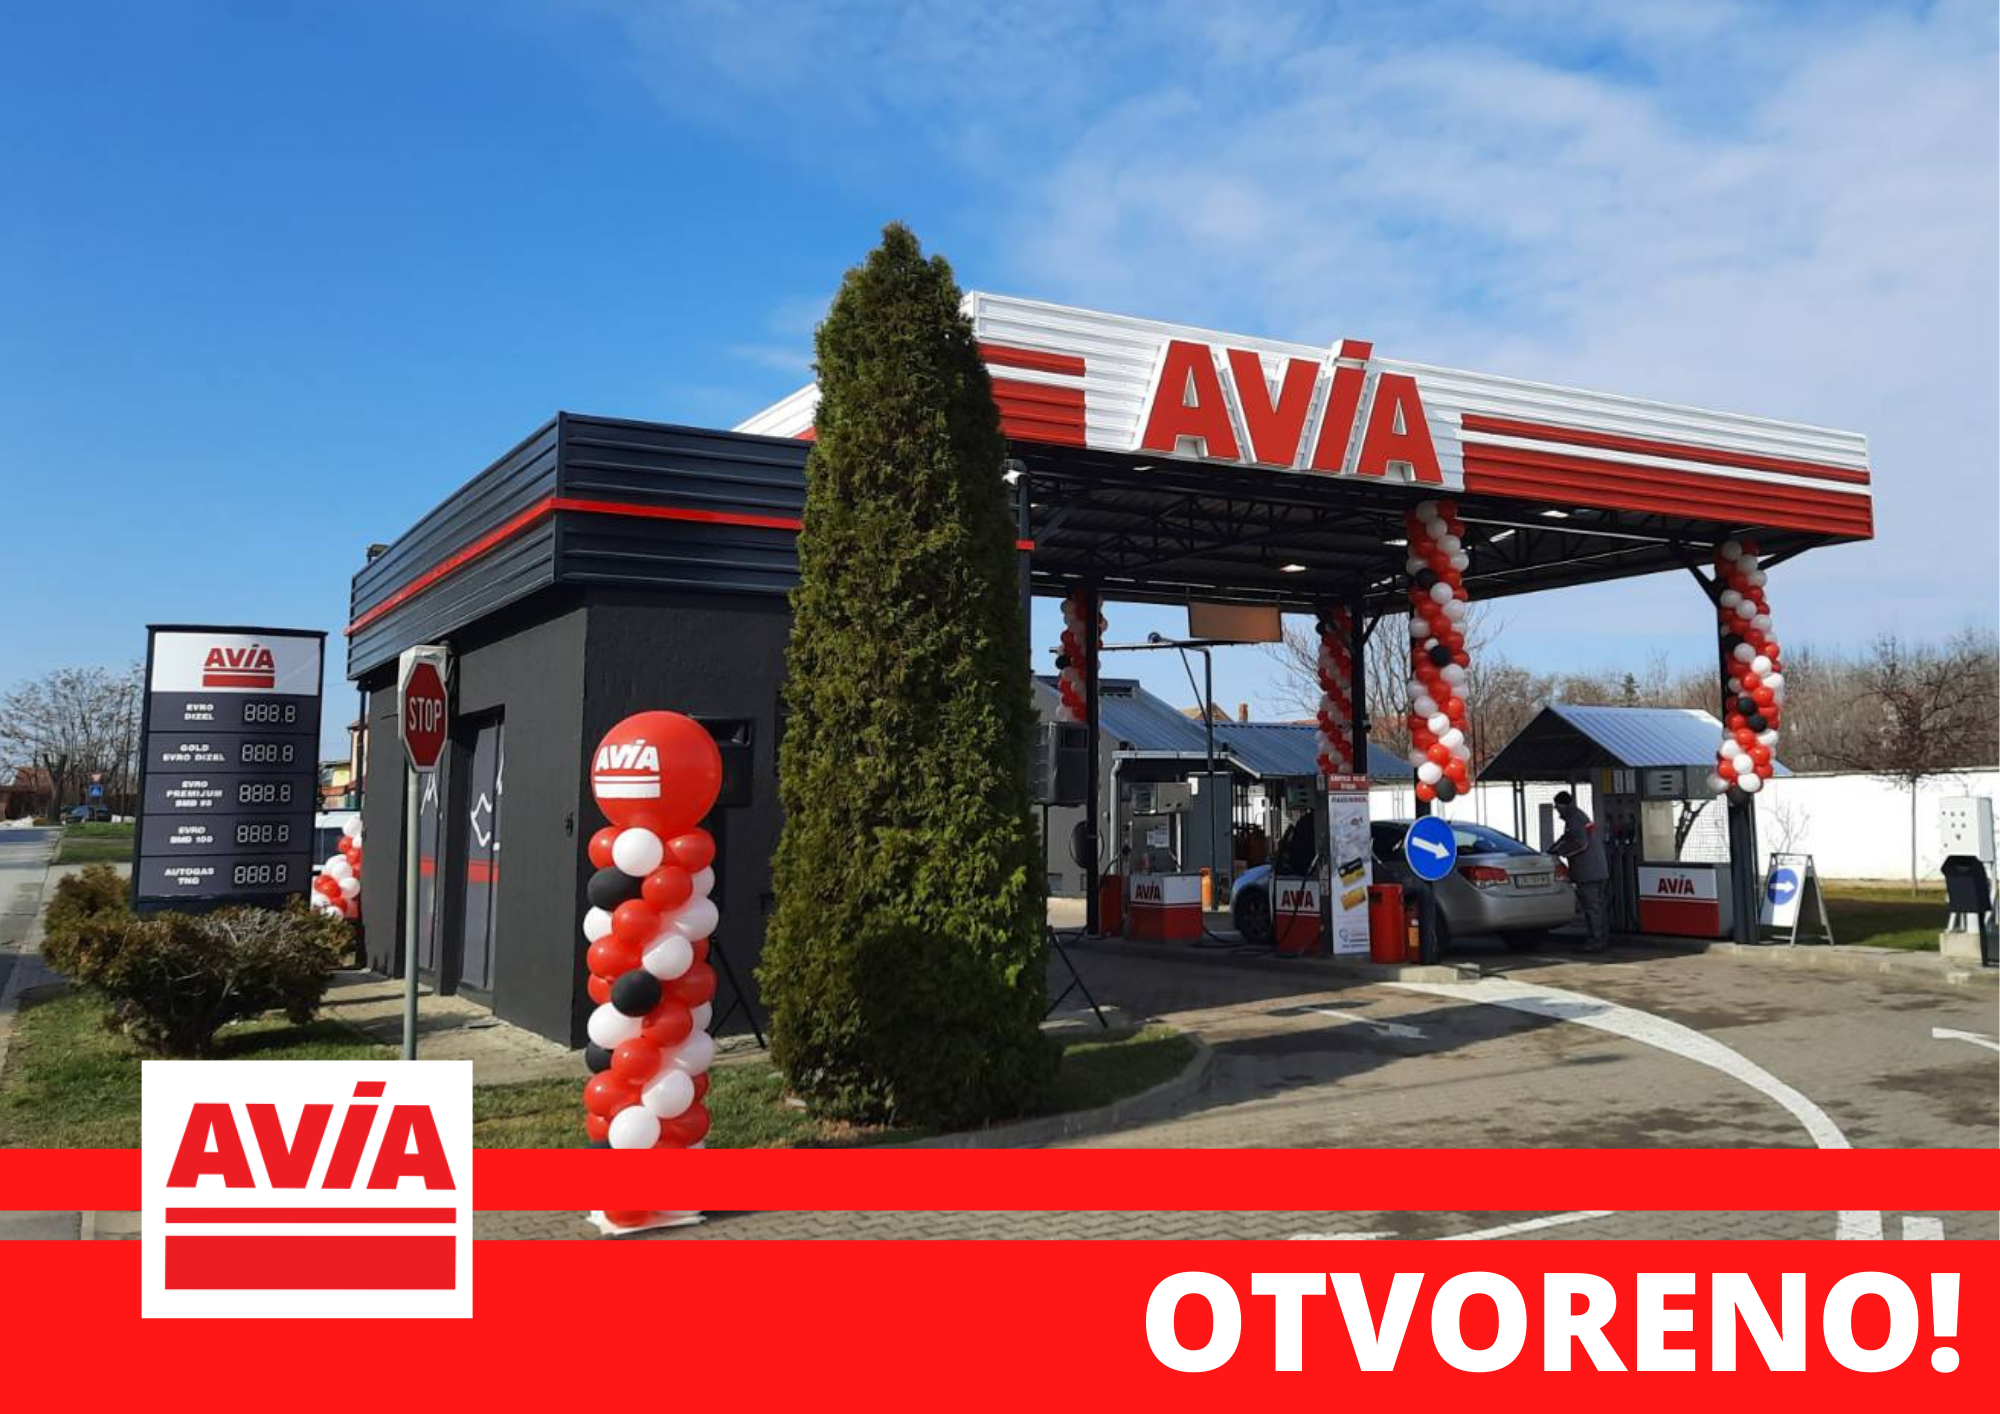 Otvorena je nova AVIA benzinska stanica u Zrenjaninu